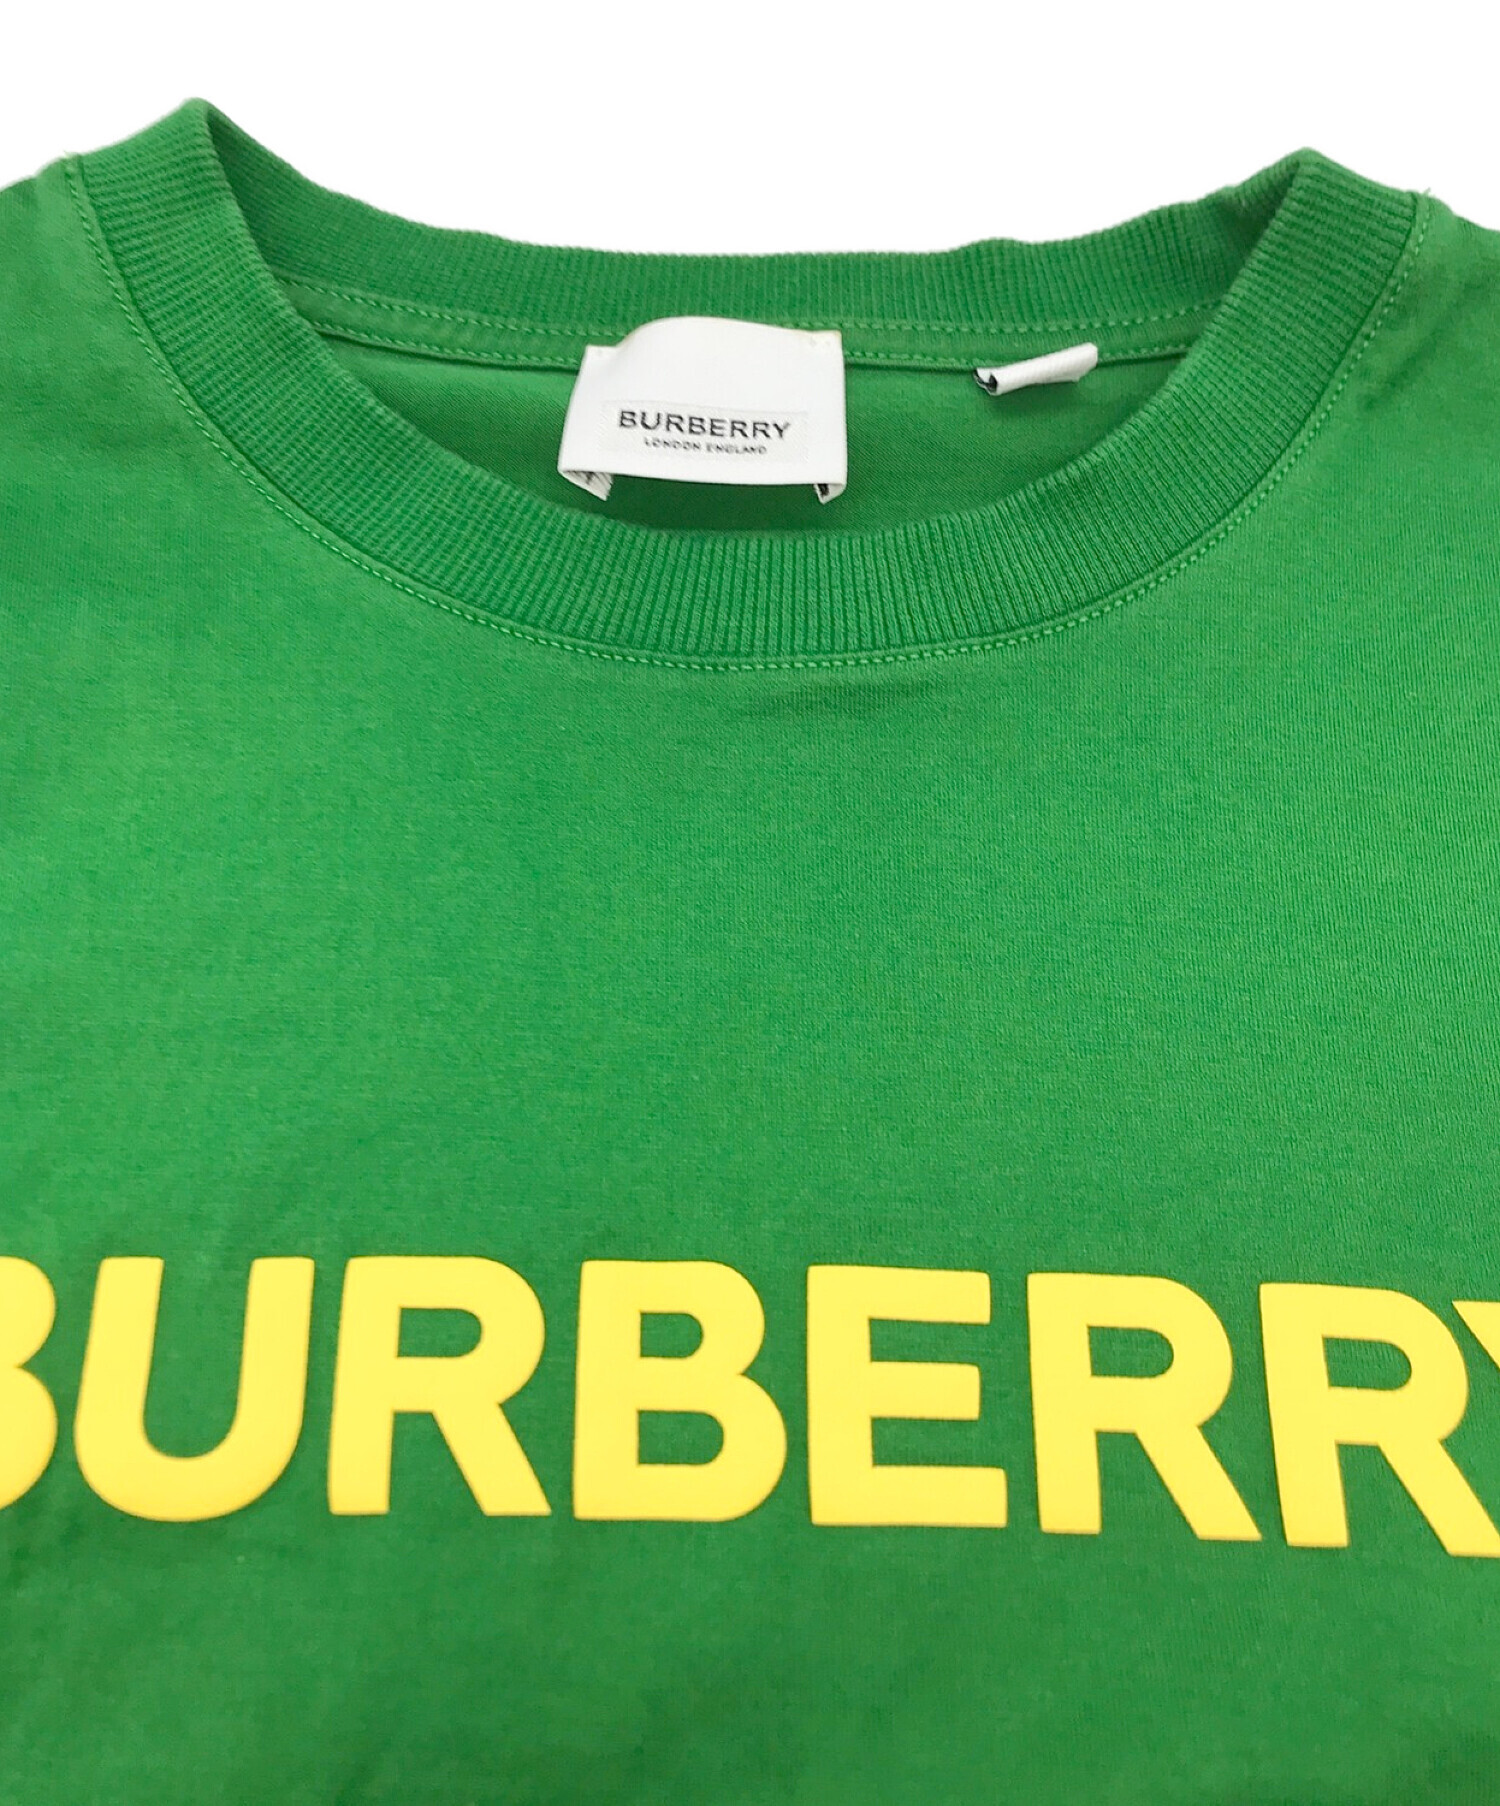 中古・古着通販】BURBERRY (バーバリー) ロゴTシャツ グリーン サイズ 